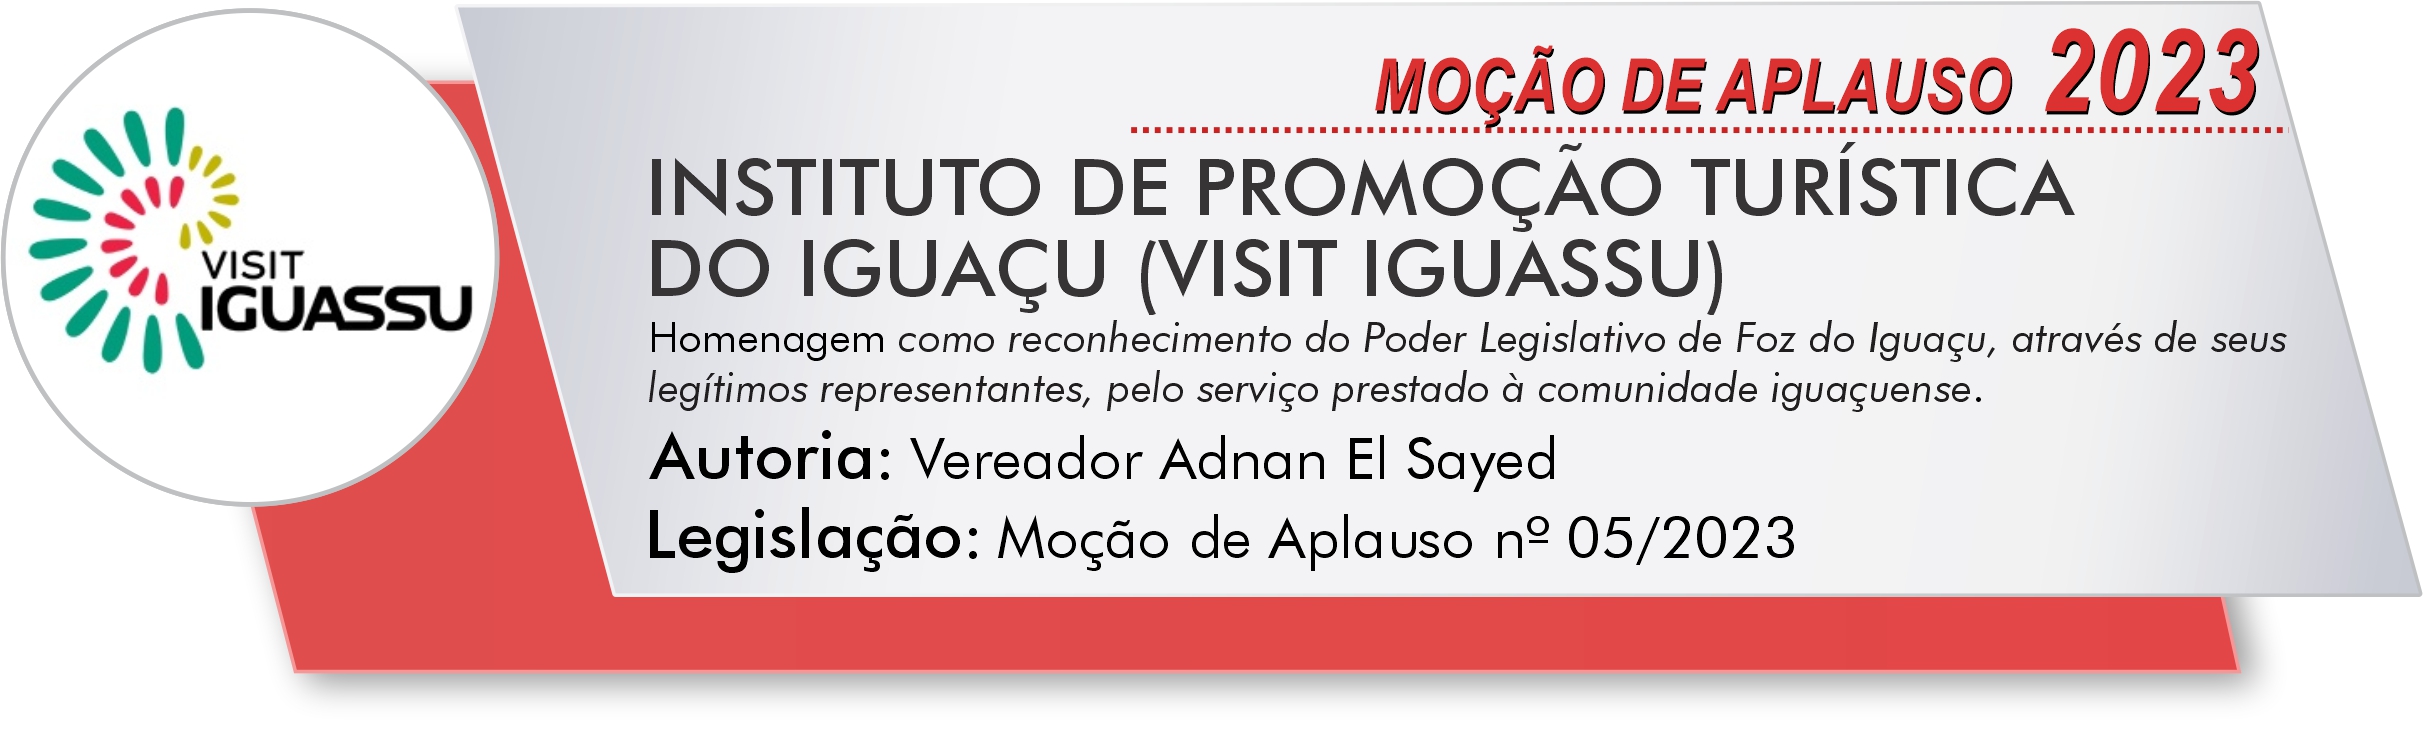 INSTITUTO DE PROMOÇÃO TURÍSTICA DO IGUAÇU (VISIT IGUASSU)